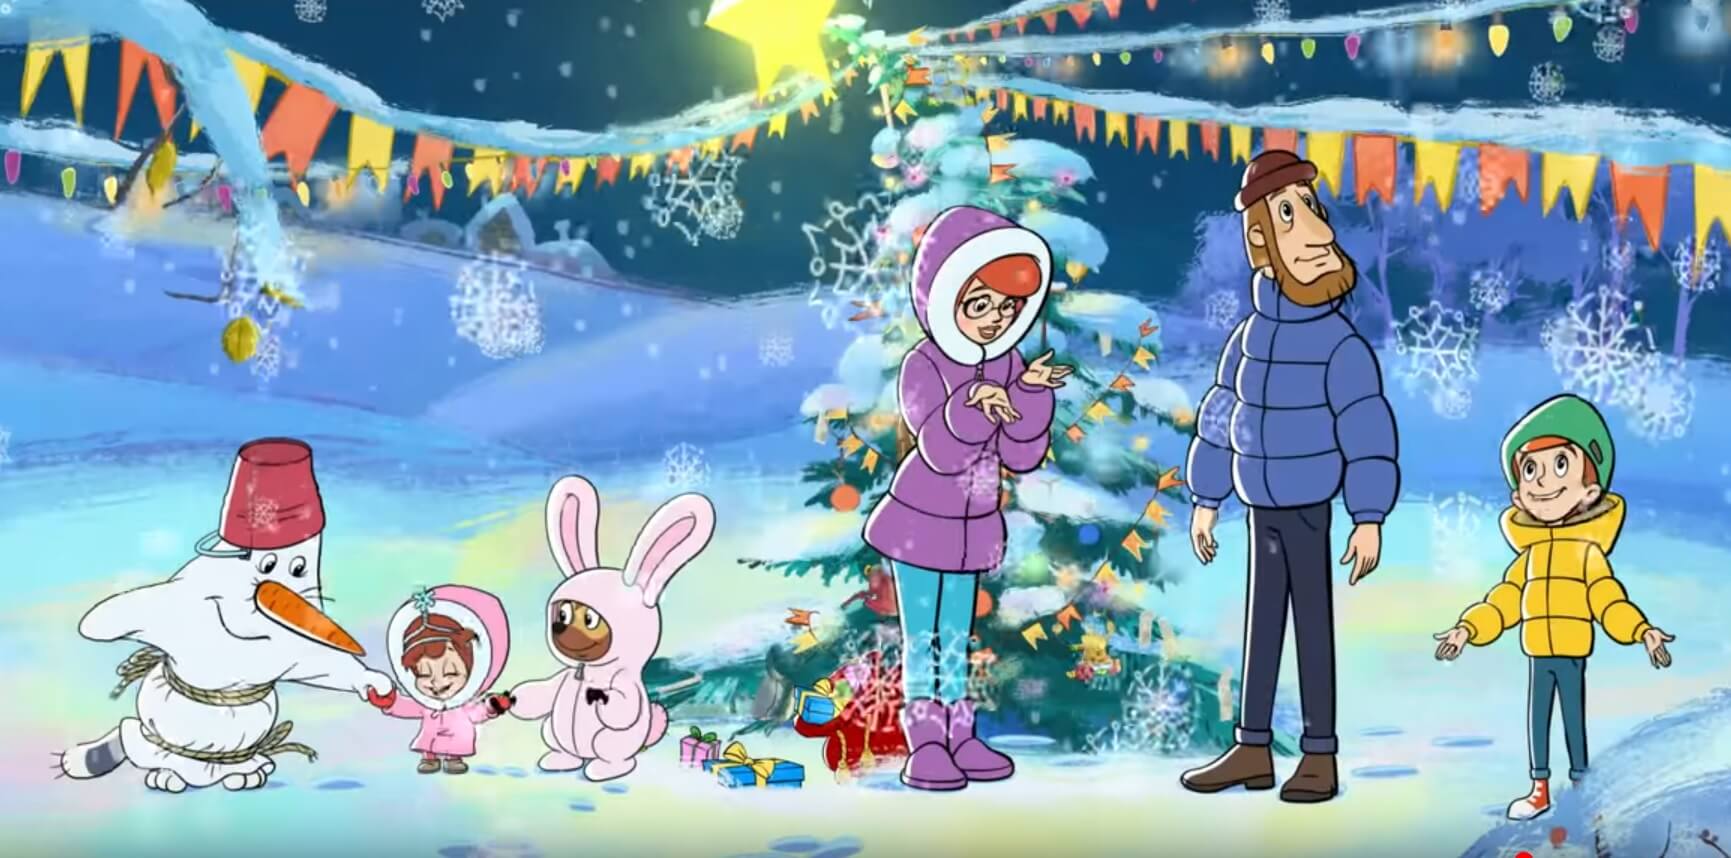 Съемки новогоднего мультфильма | снова праздник!